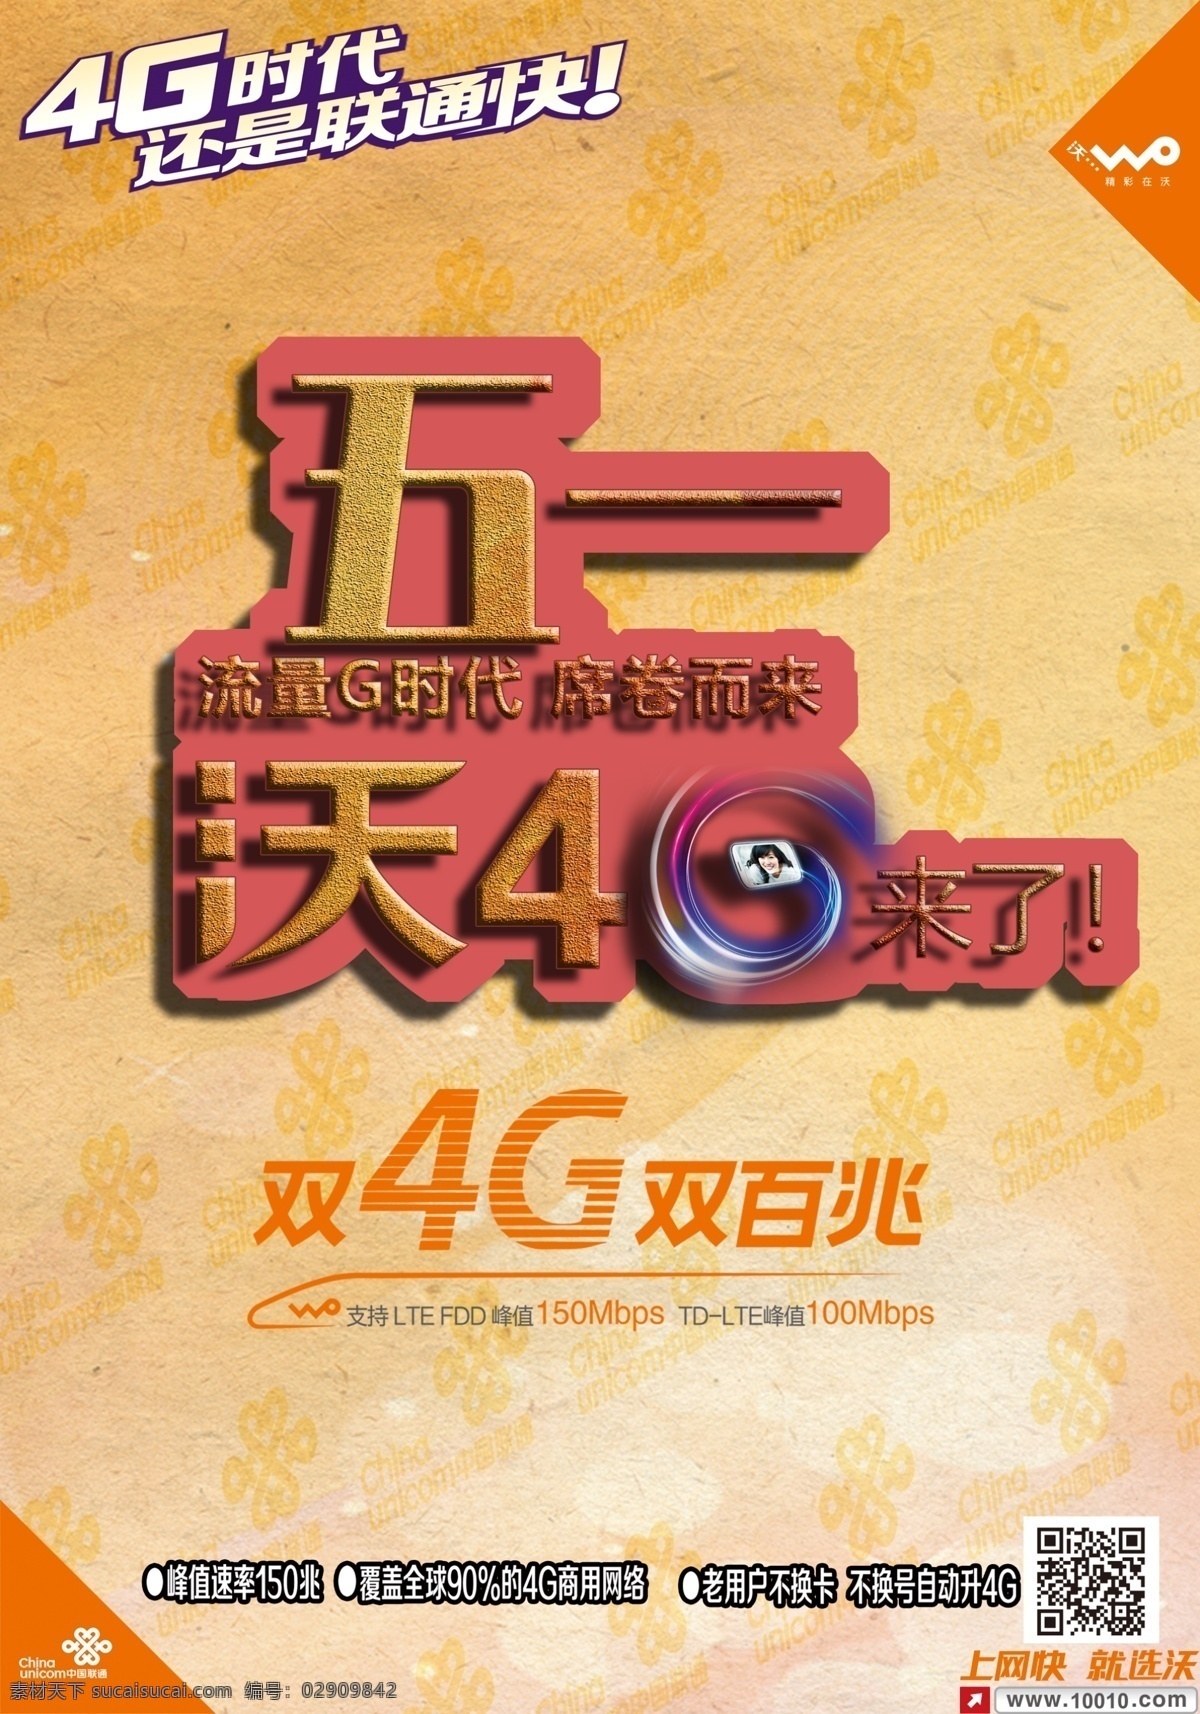 中国联通 沃 4g 活动 海报 4g的 51活动 联通双4g 黄色